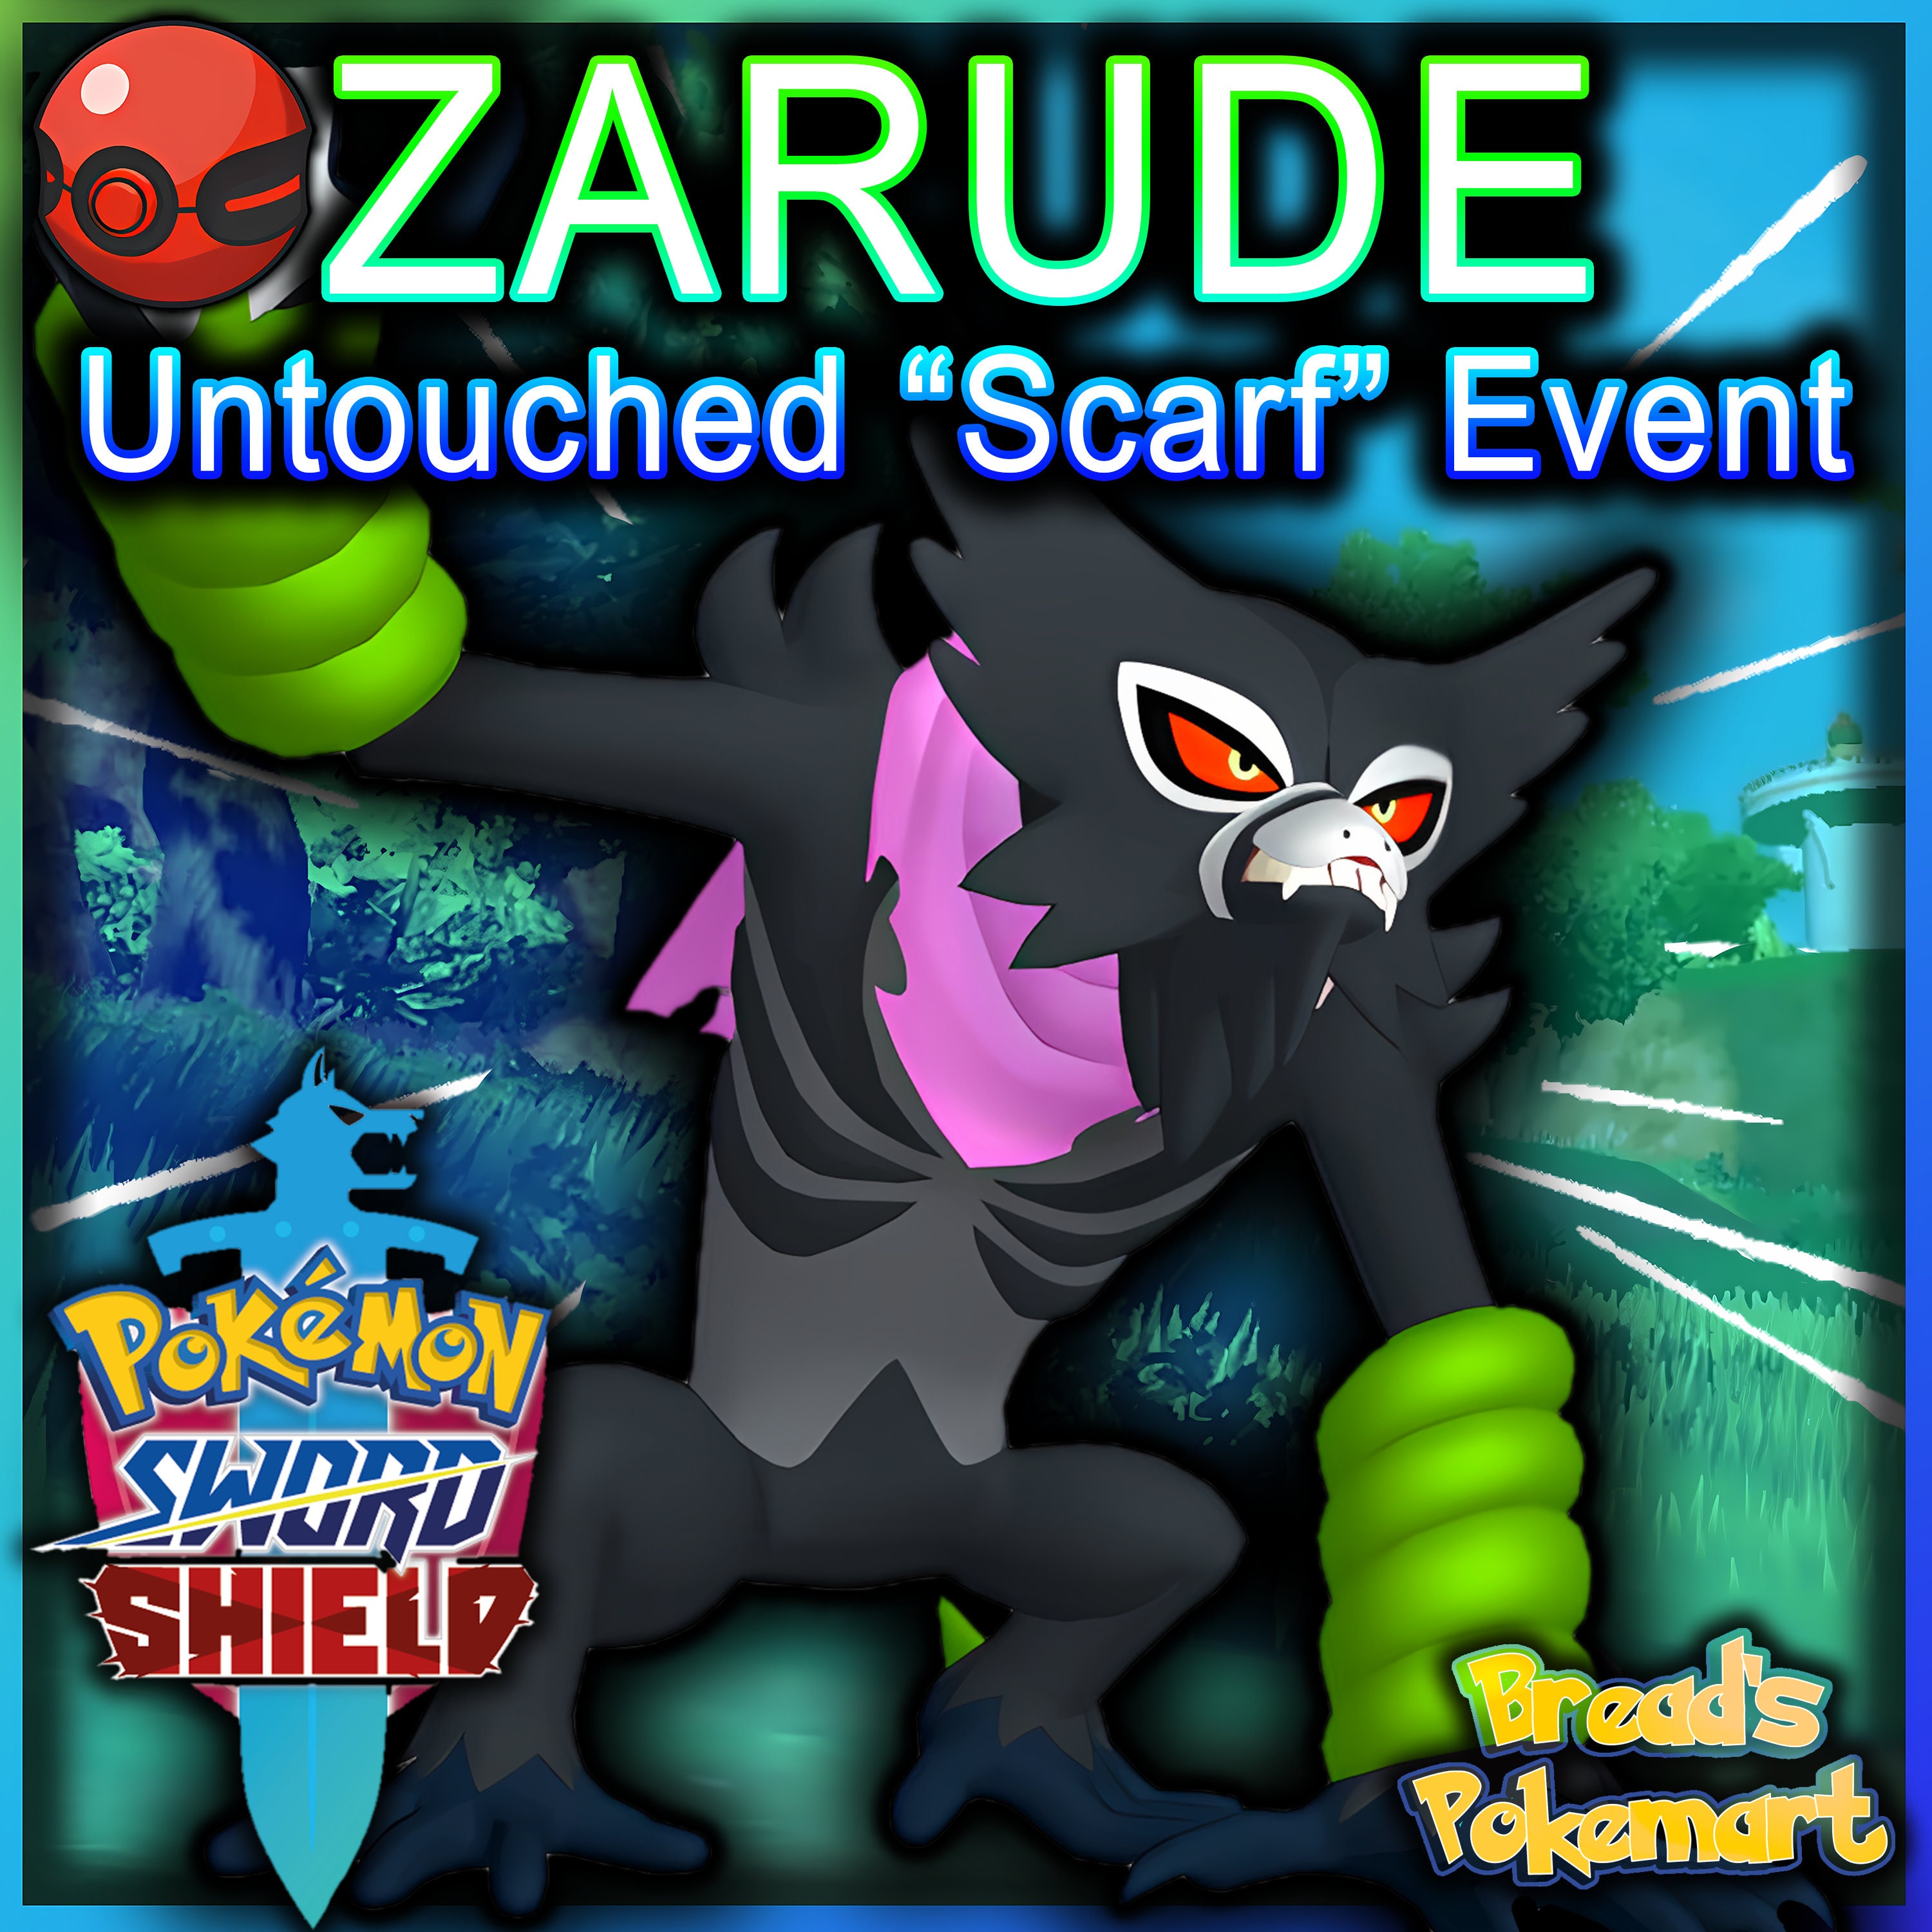 Zarude in a nutshell : r/pokemon